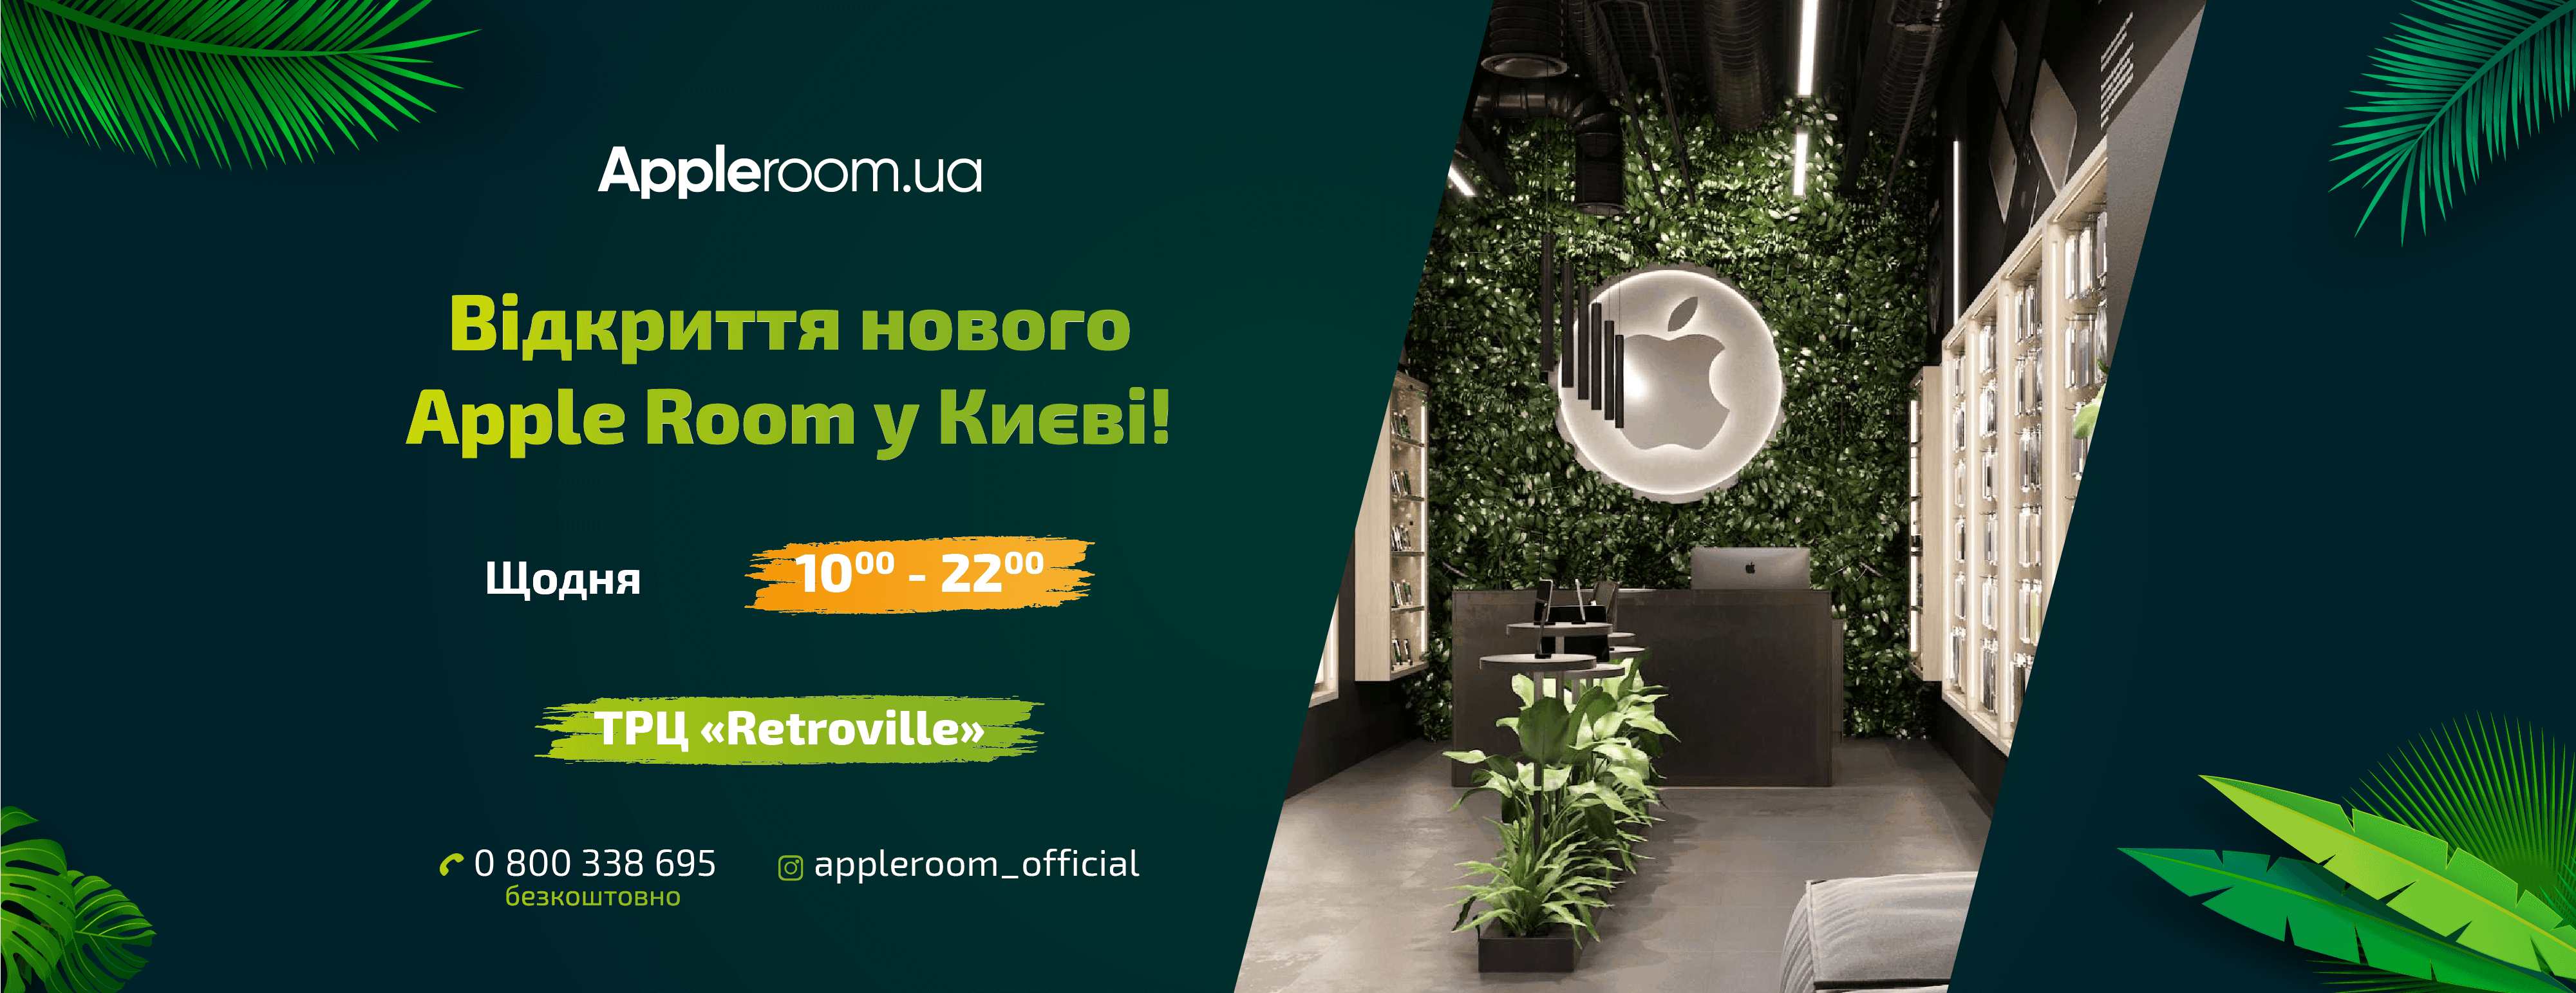 WOW! Новий Apple Room у Києві!